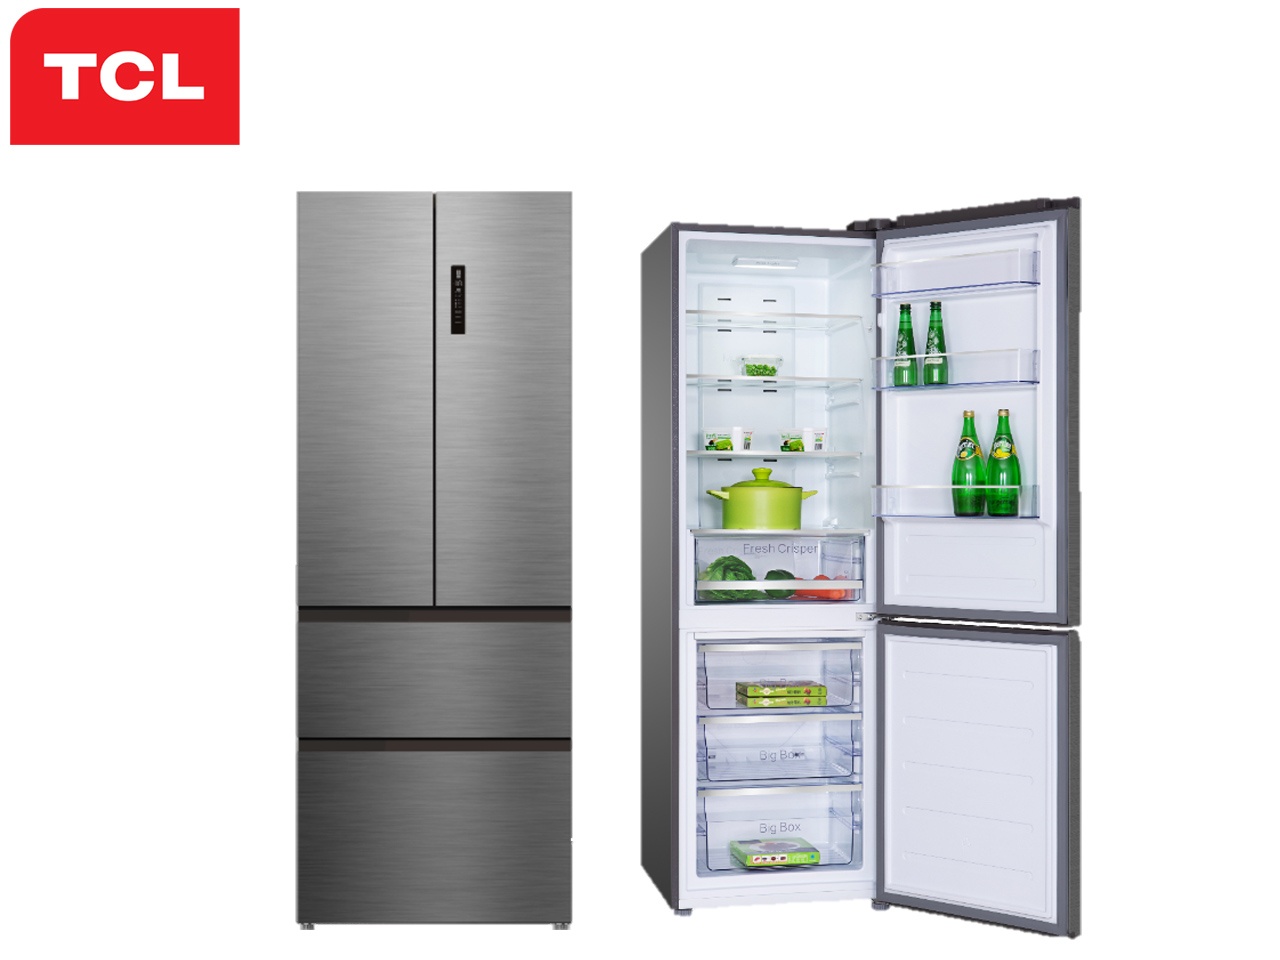 TCL lance trois réfrigérateurs « Total No Frost », destinés au marché européen